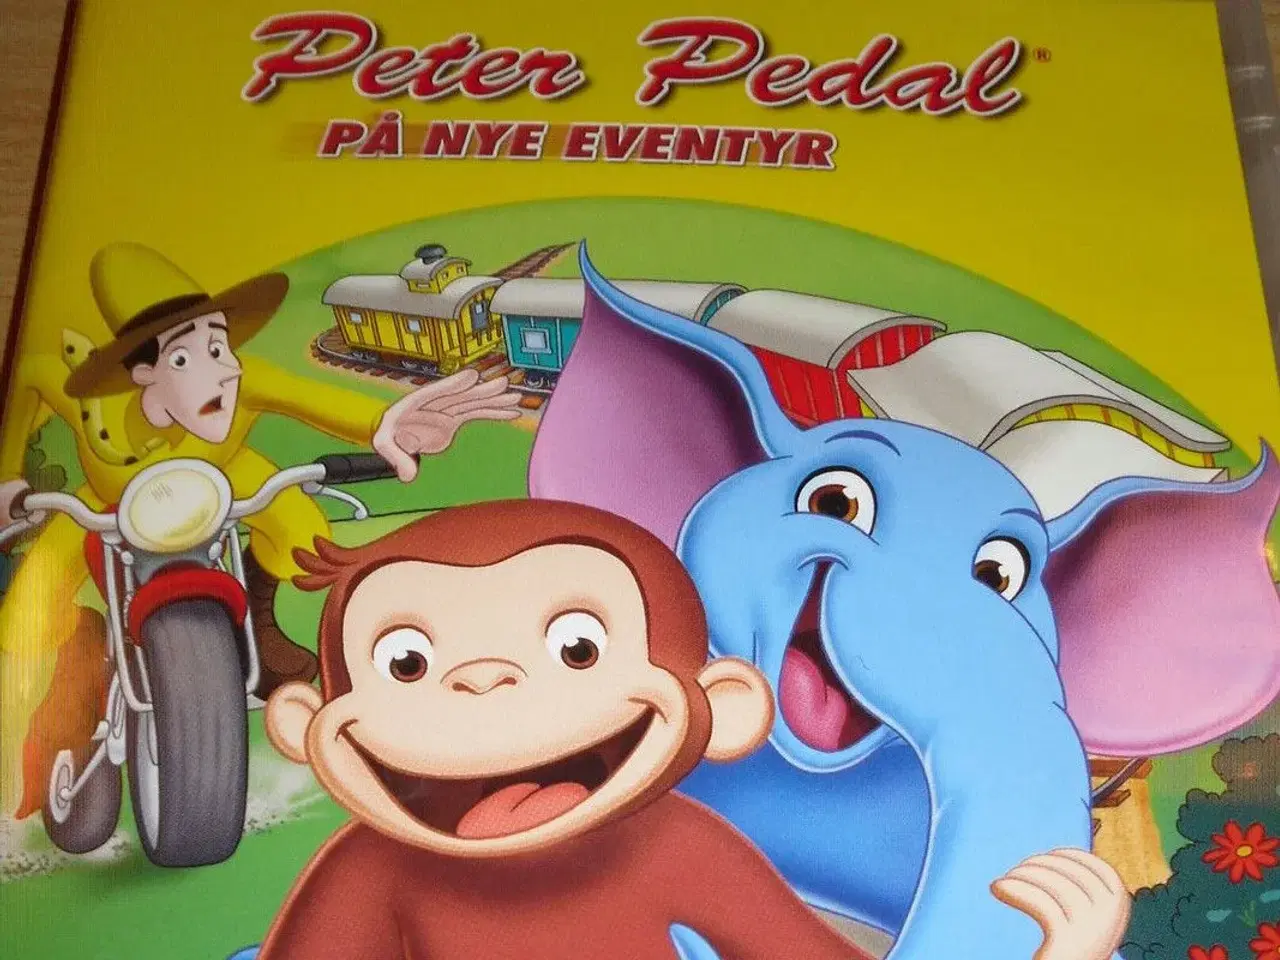 Billede 1 - PETER PEDAL på nye eventyr - dvd.